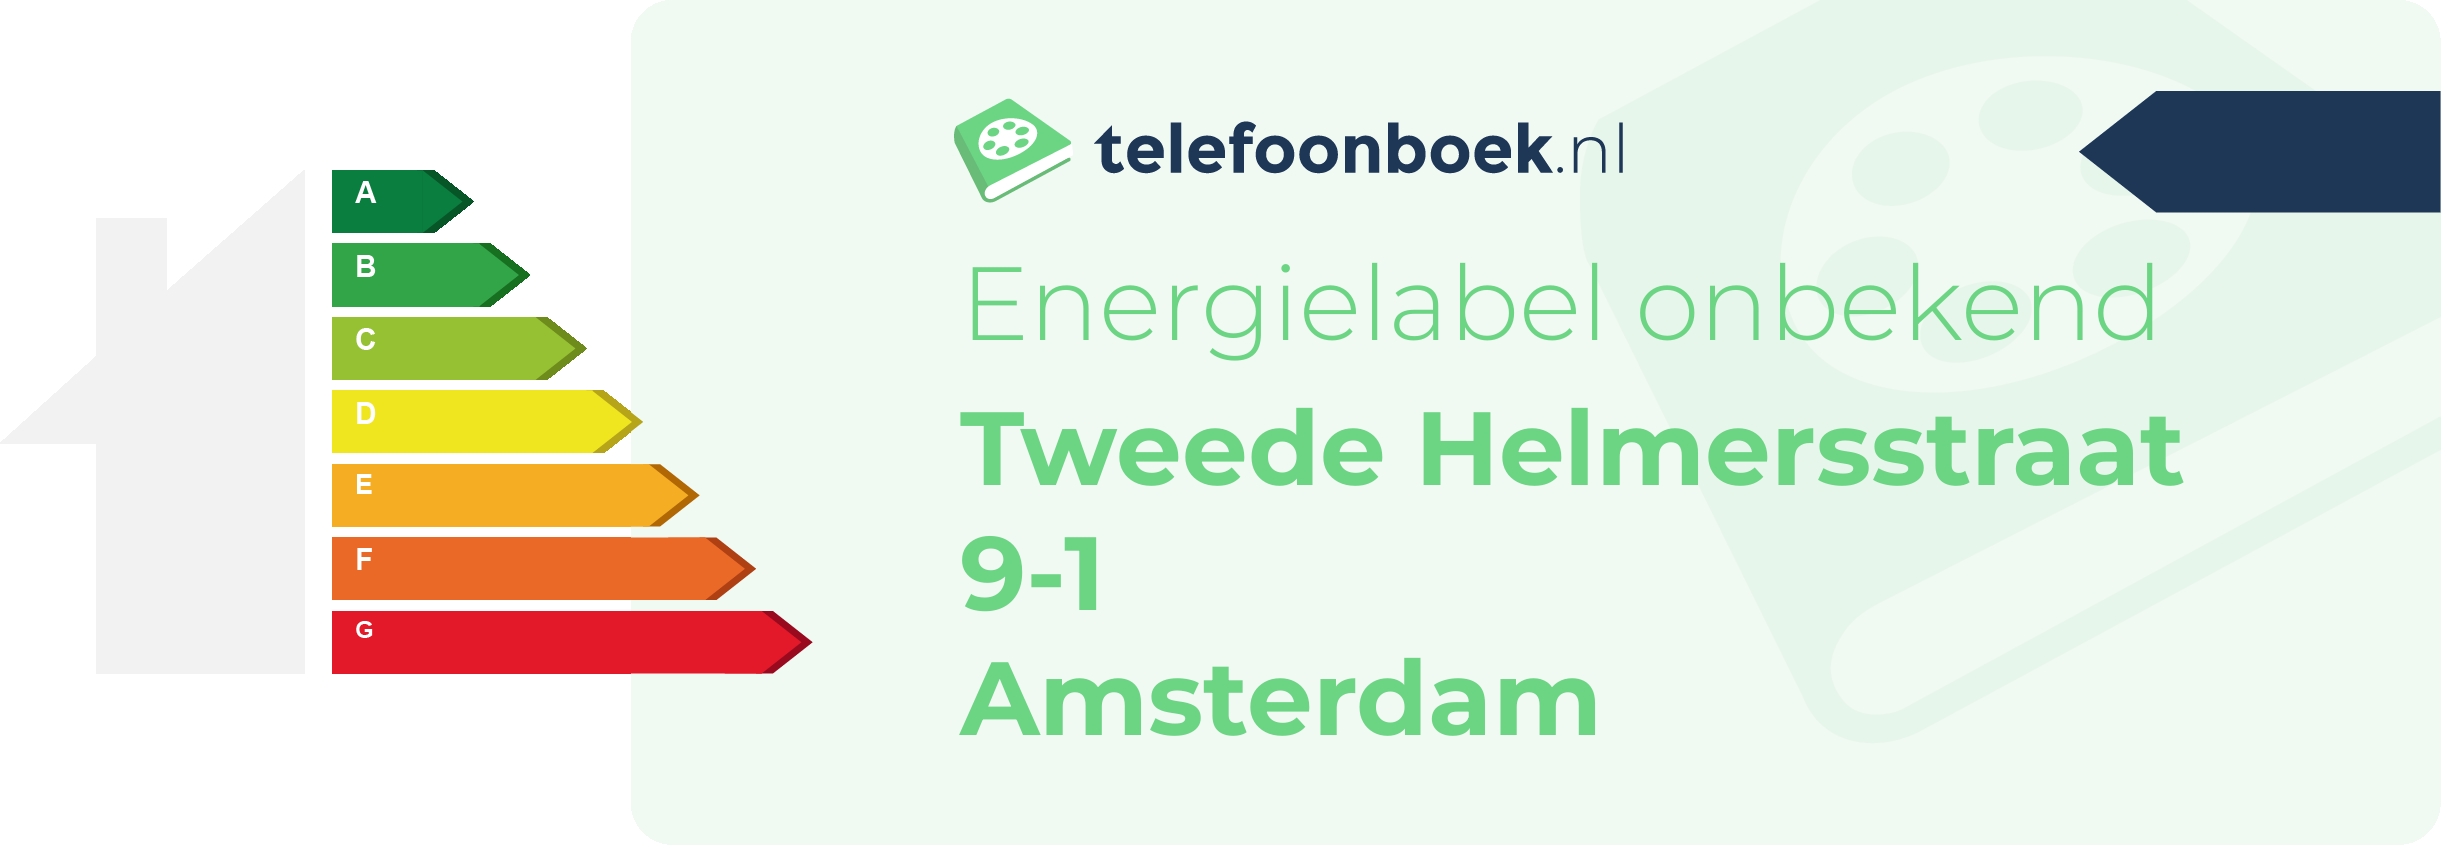 Energielabel Tweede Helmersstraat 9-1 Amsterdam